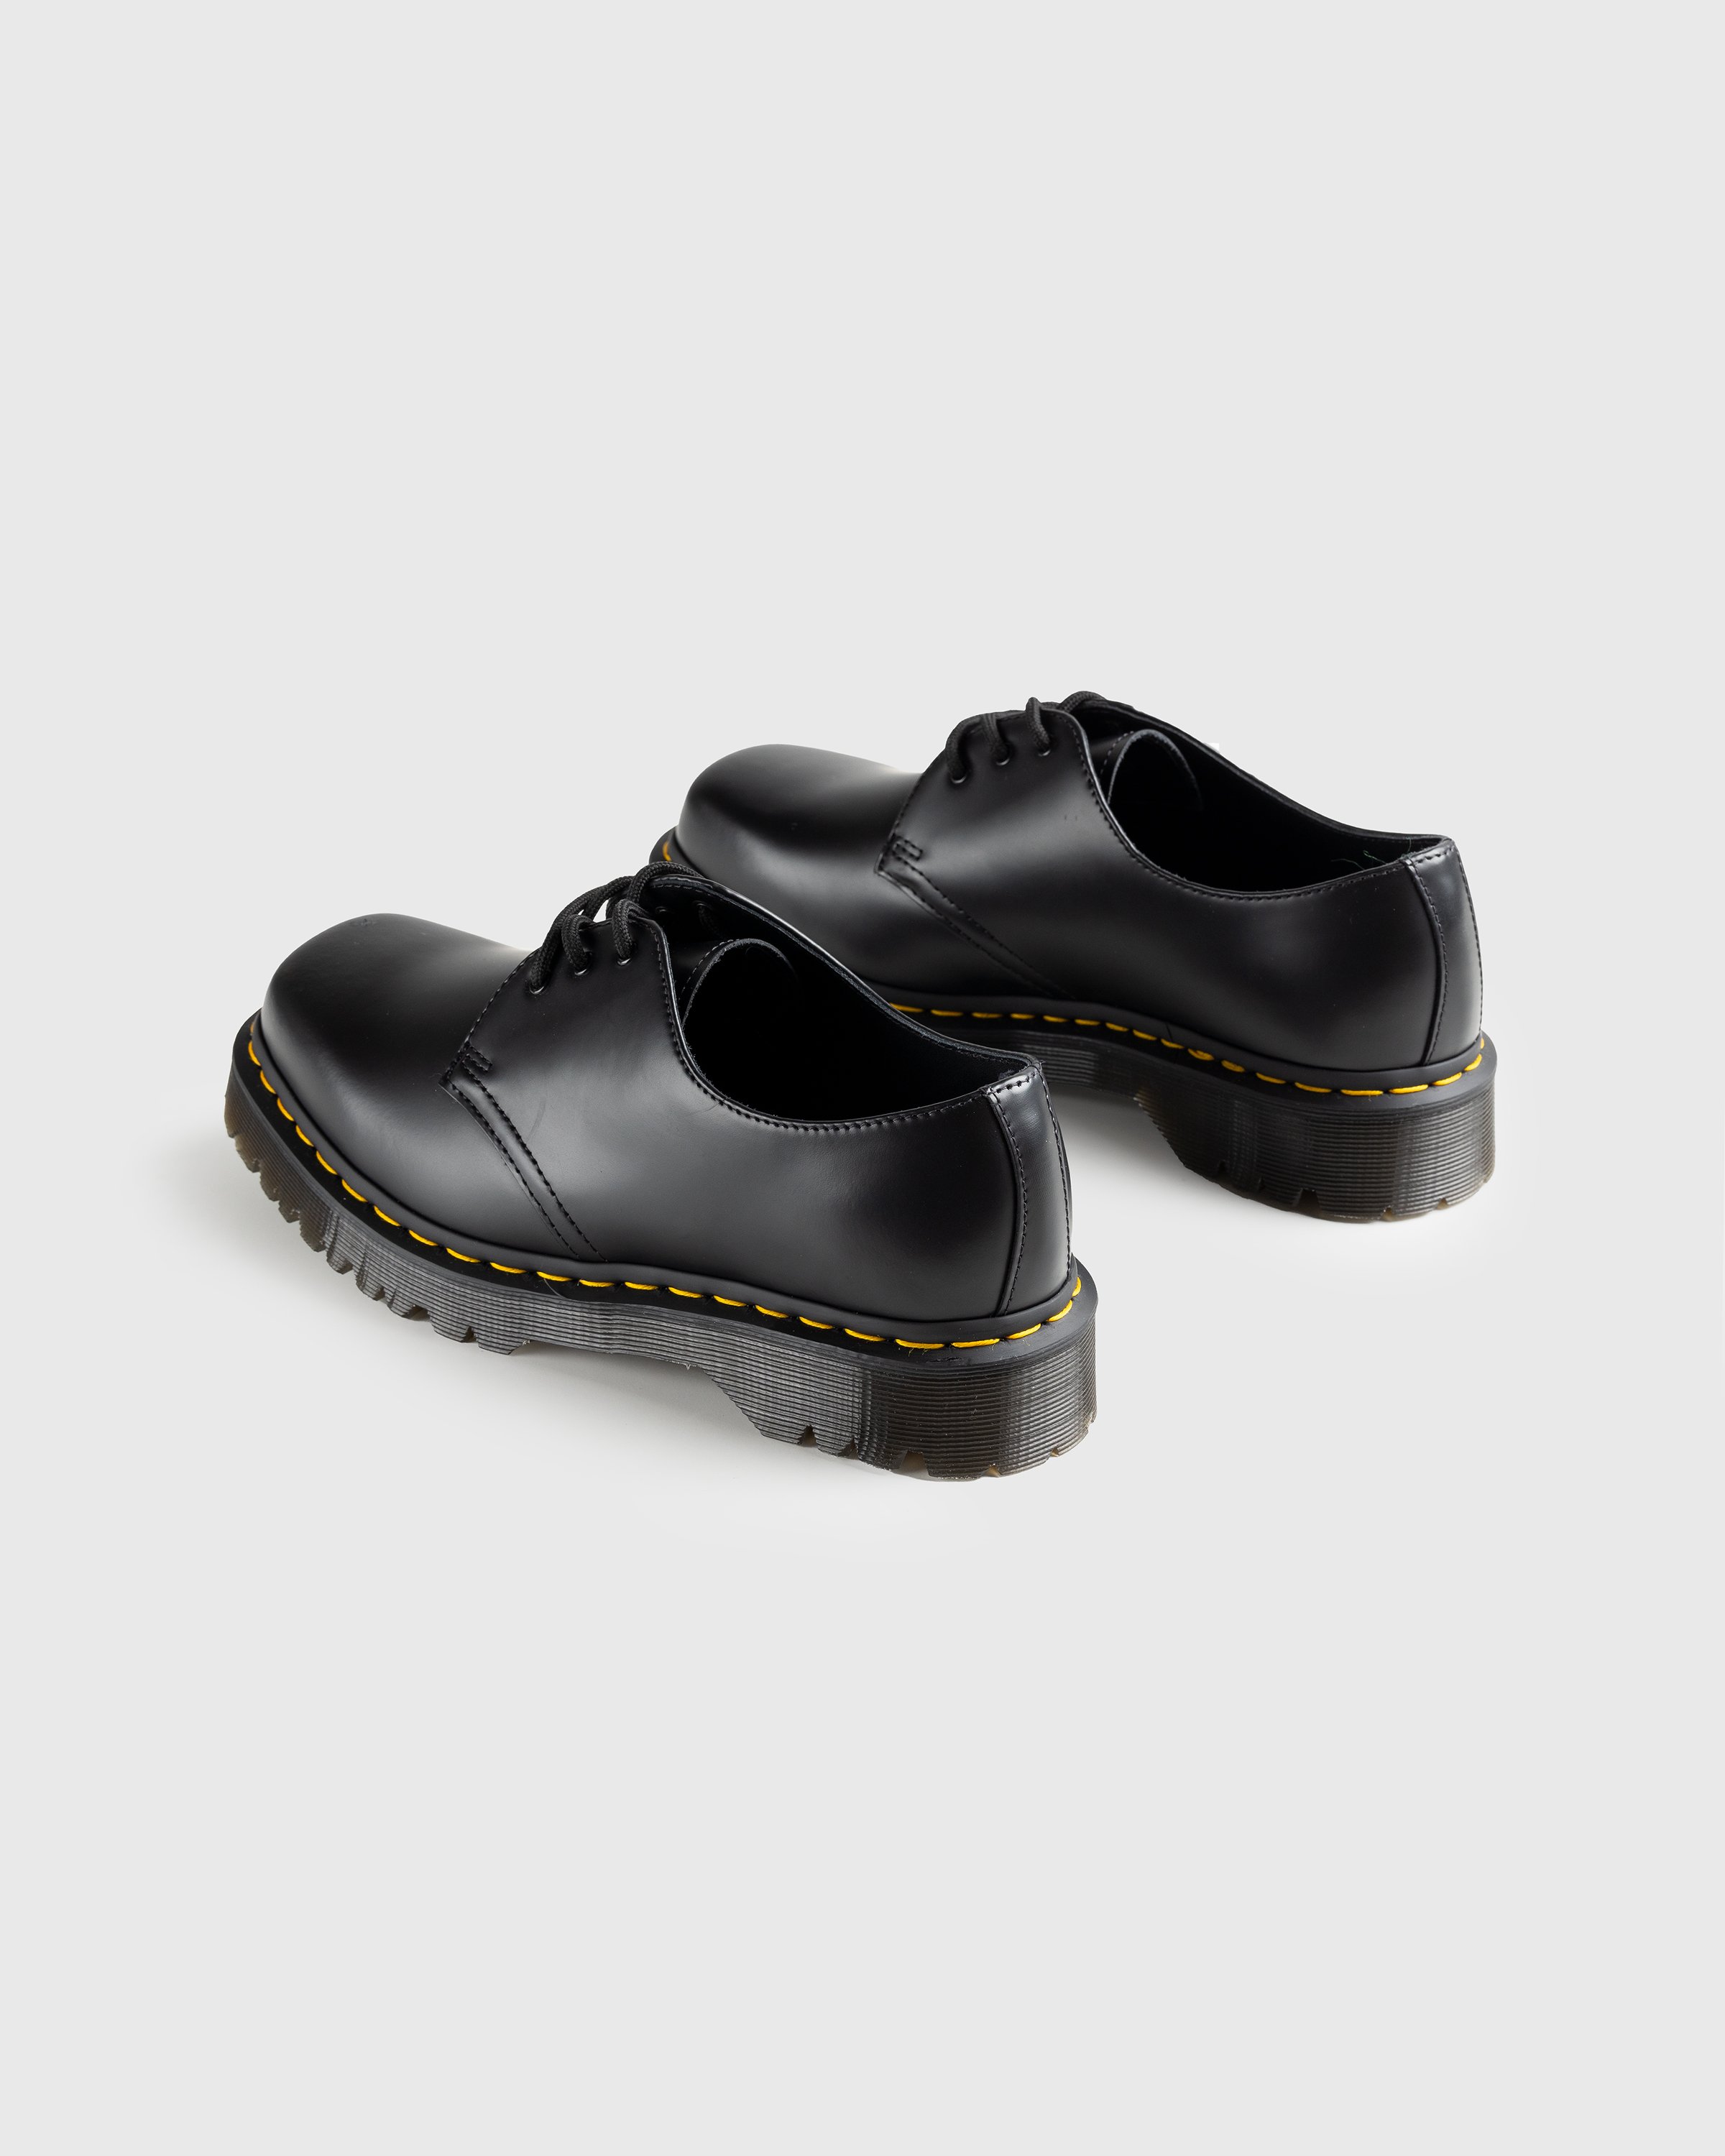 Dr. Martens - 1461 Bex Squared Black Polished Smooth - Footwear - Black - Image 4